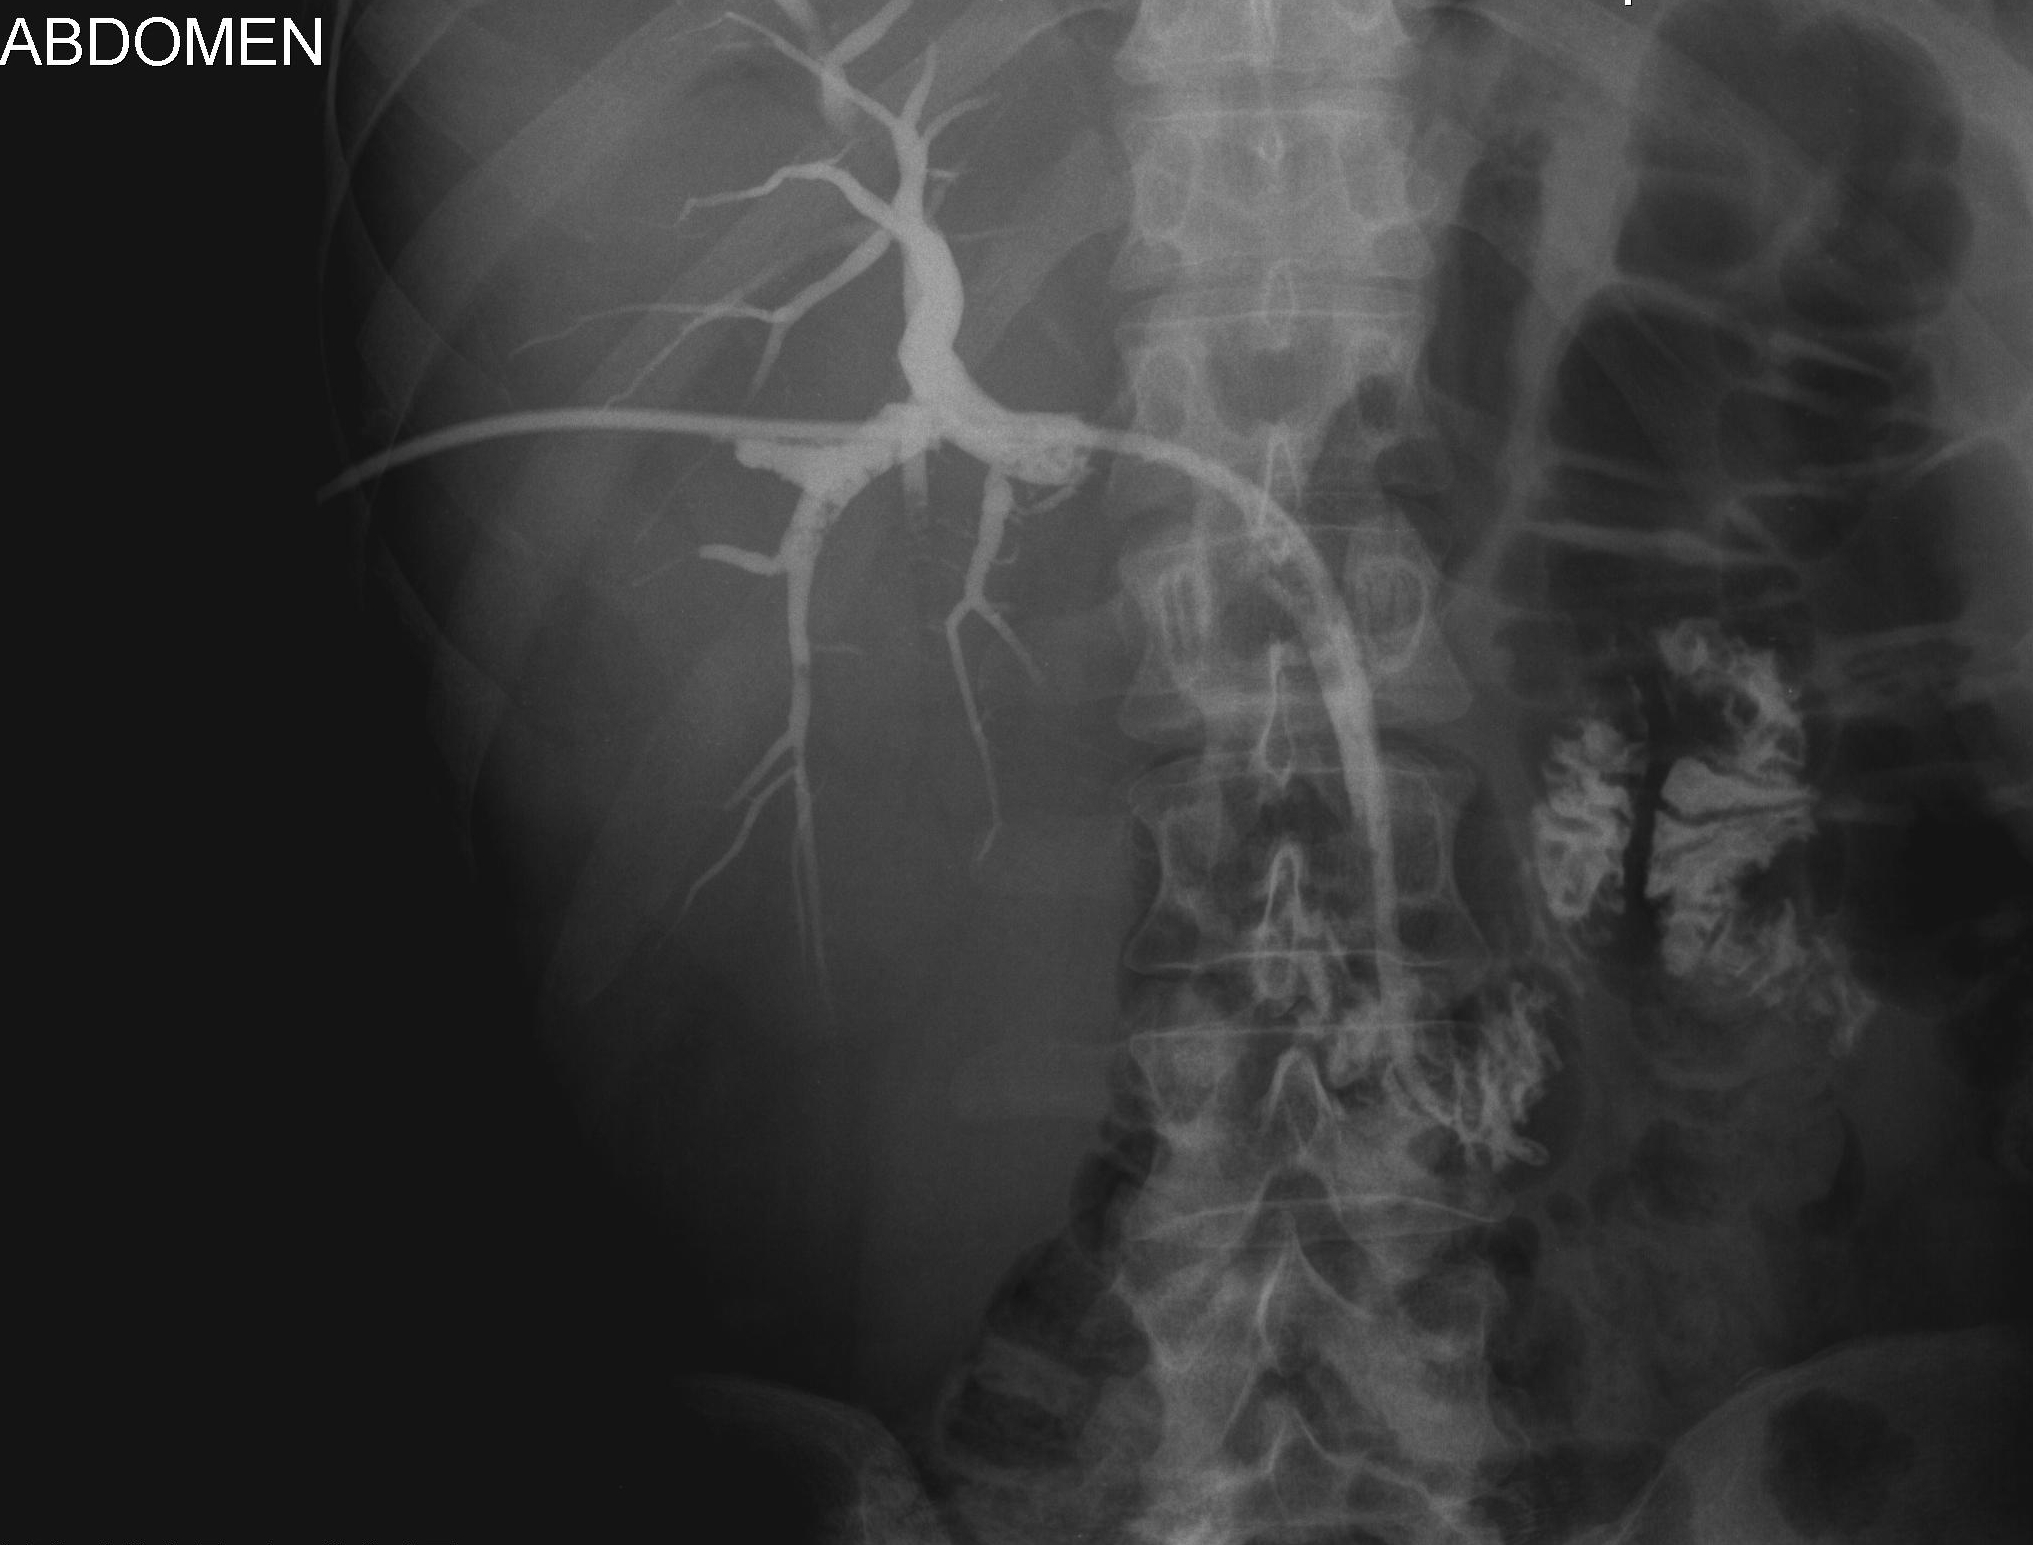 Cholangiografia - widok dróg żółciowych przed implantacją aplikatora do brachyterapii, założono dren 10 F metodą rendez-vous.